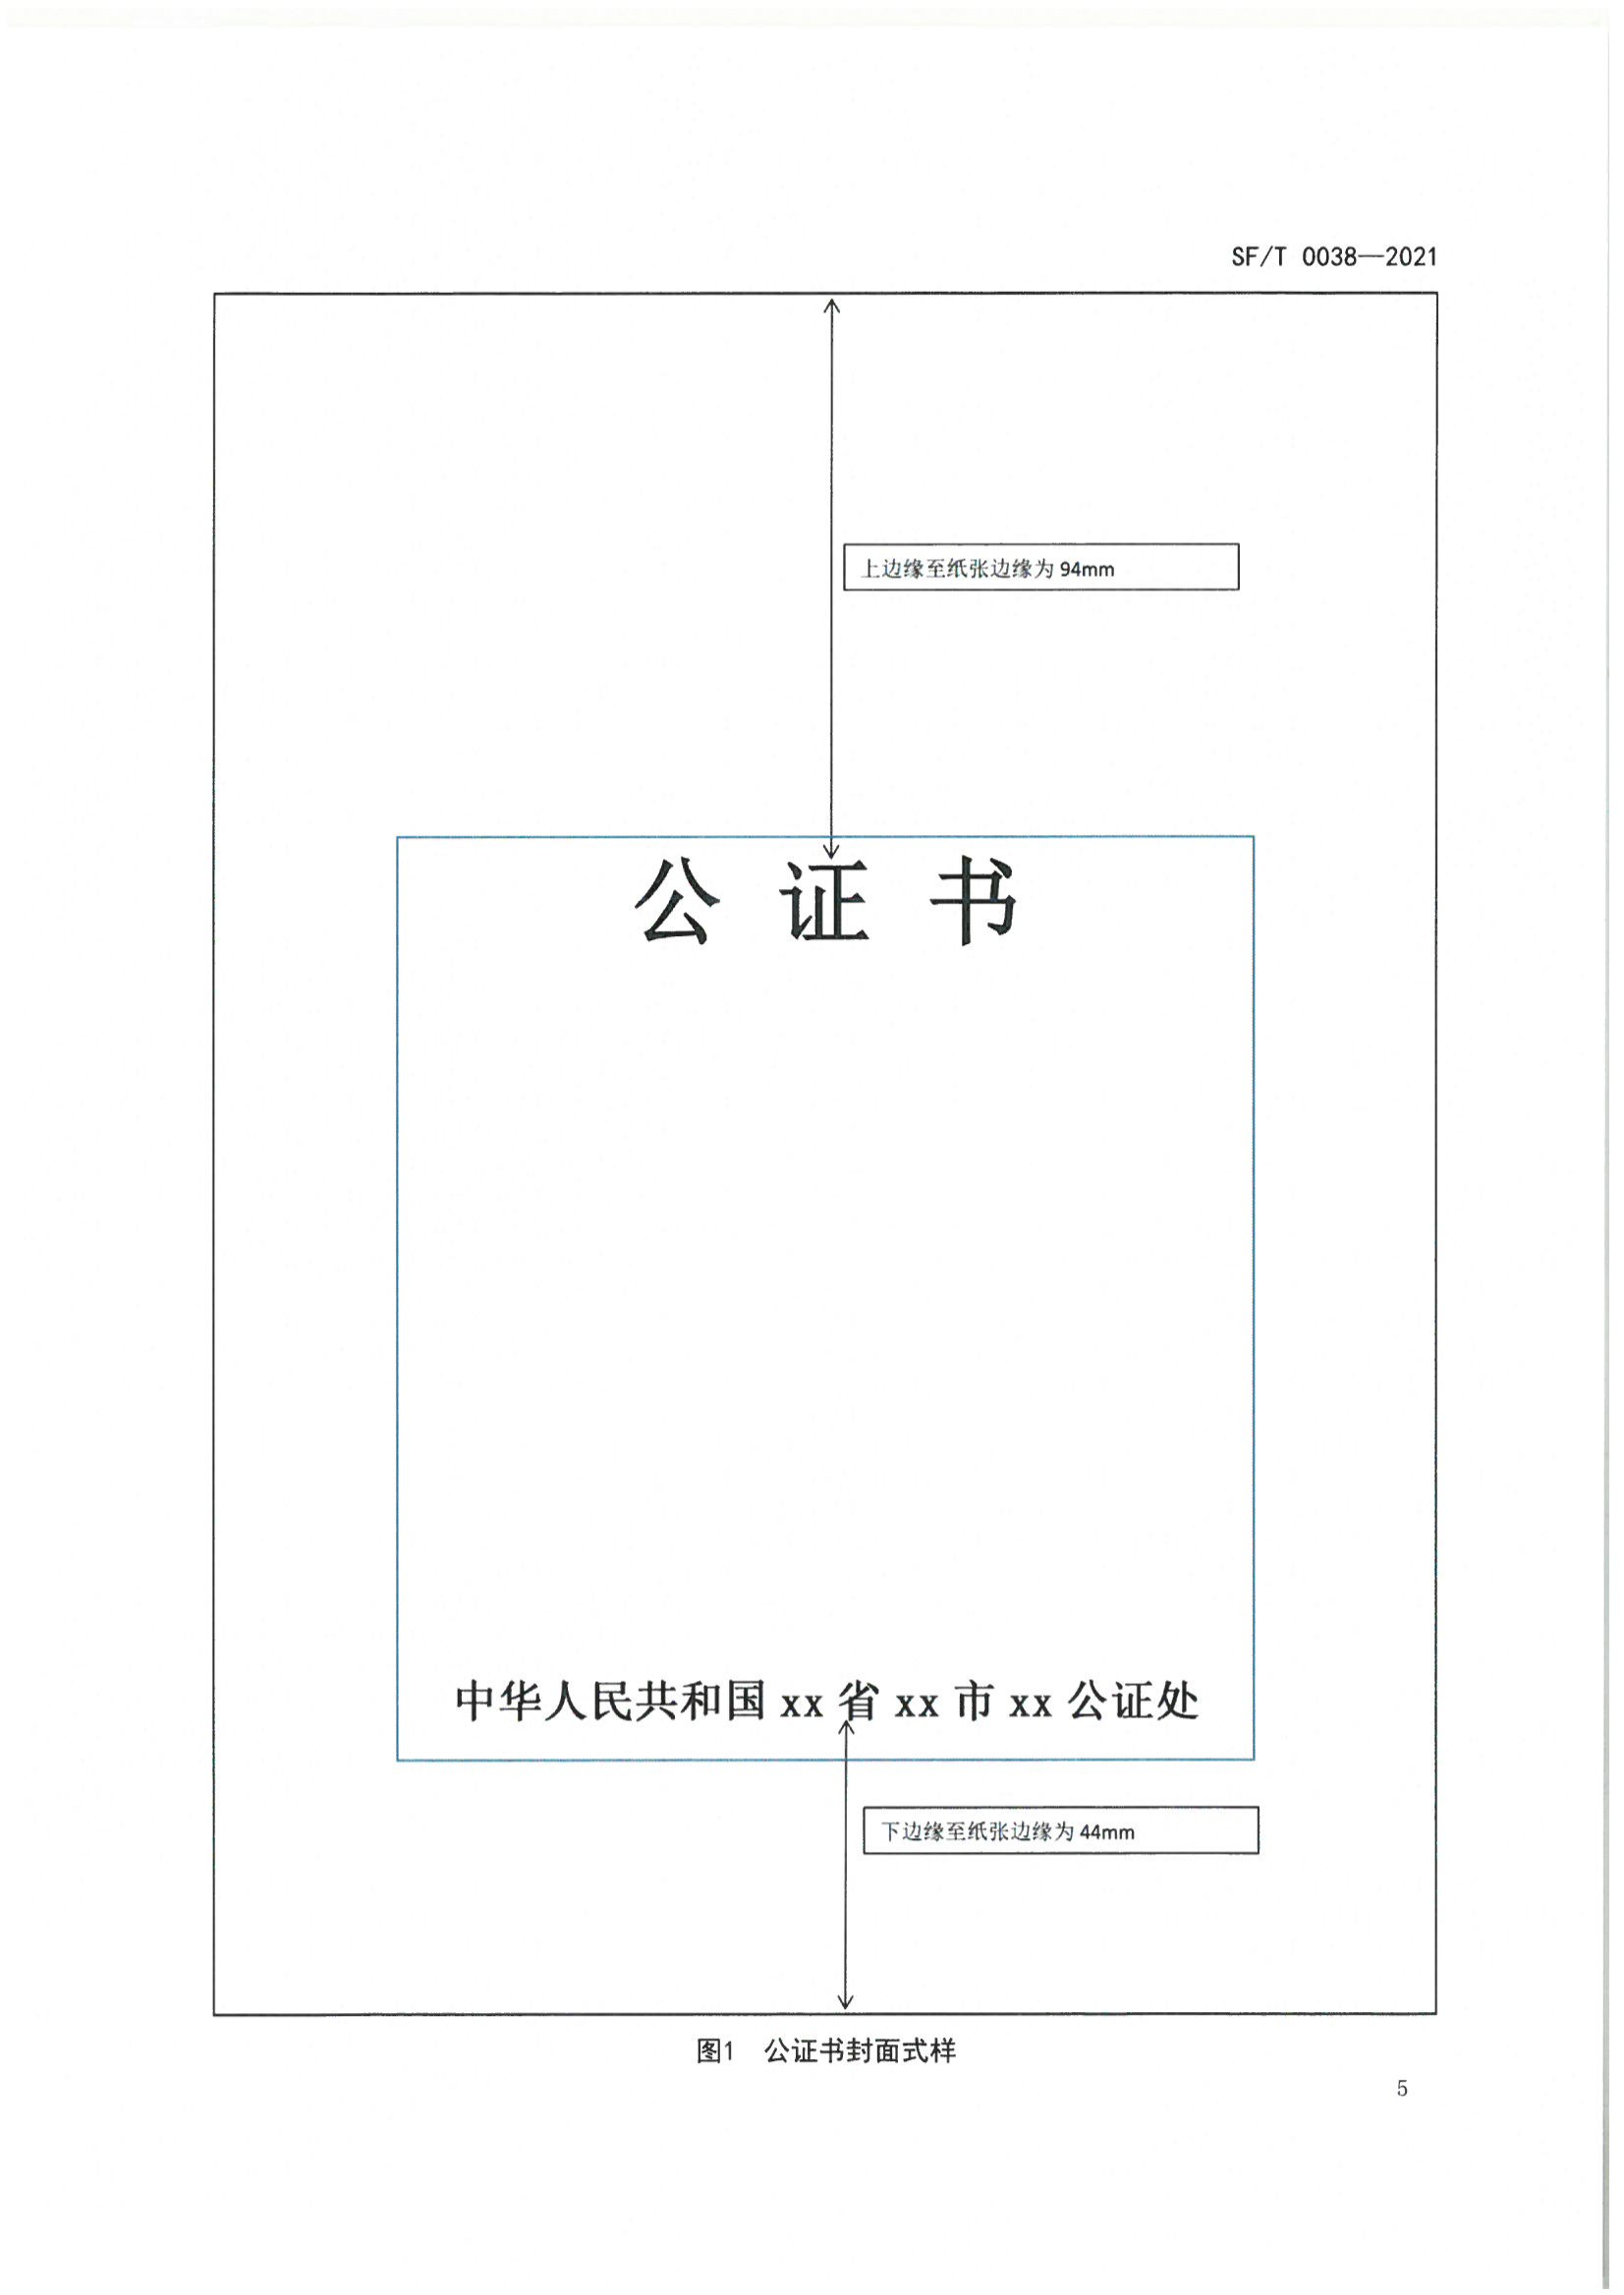 京公协字【2021】23号 北京市公证协会关于印发《公证书制作规范（SFT0038-2021）》（修订）的通知_09